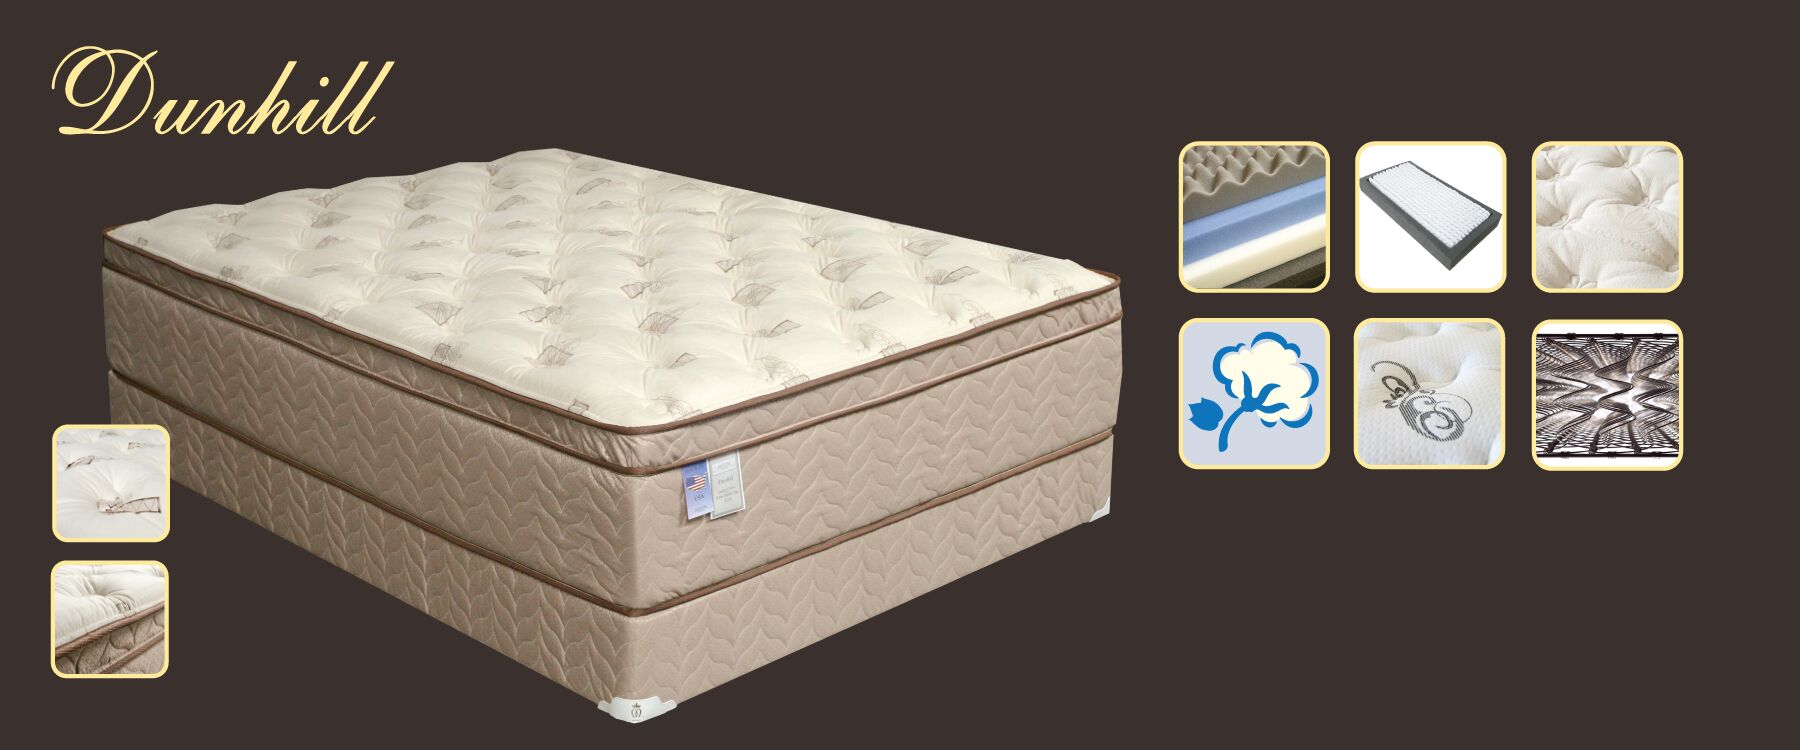 maxim mattress king size